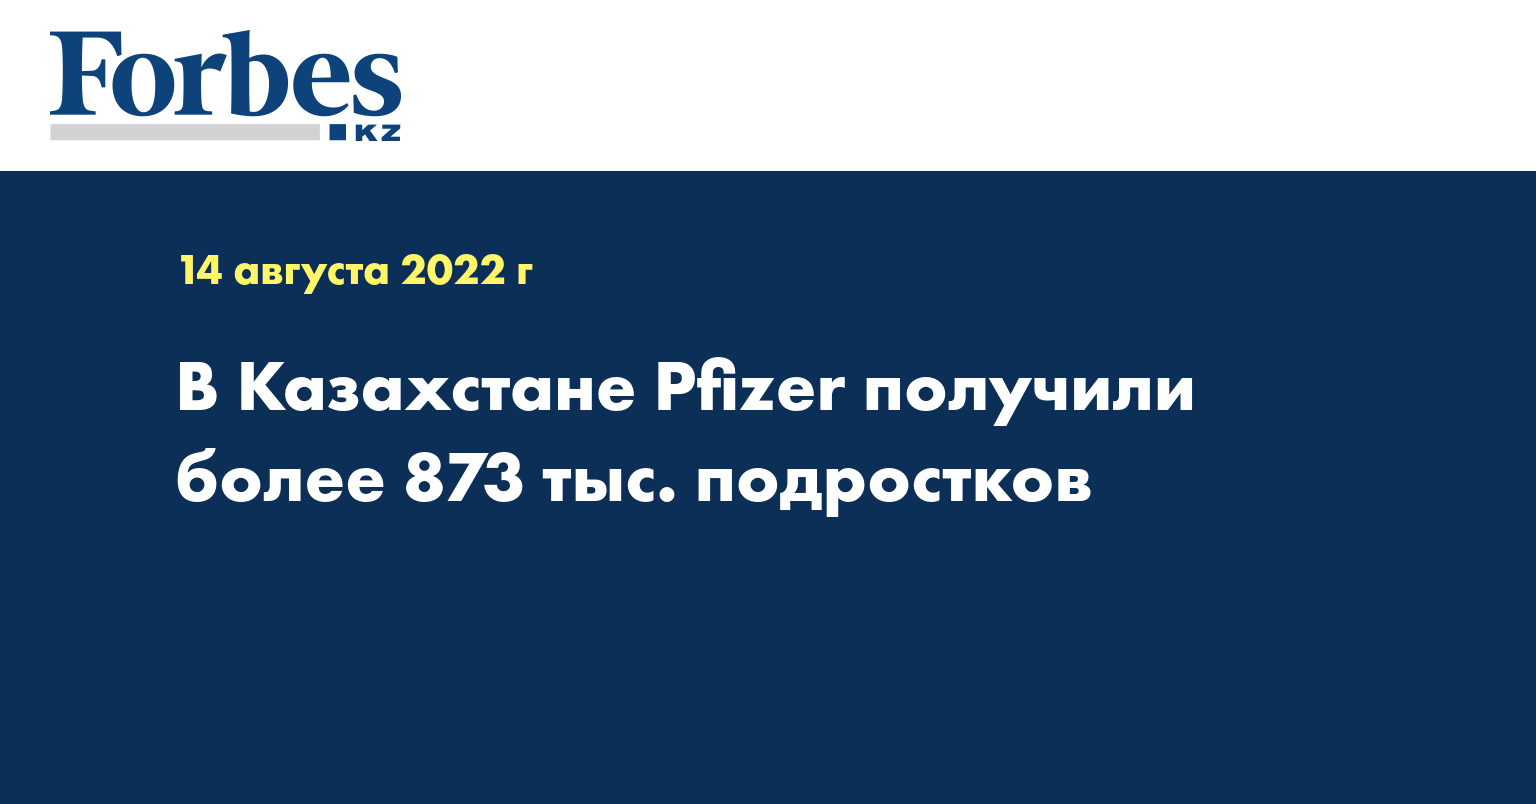 В Казахстане Pfizer получили более 873 тыс. подростков